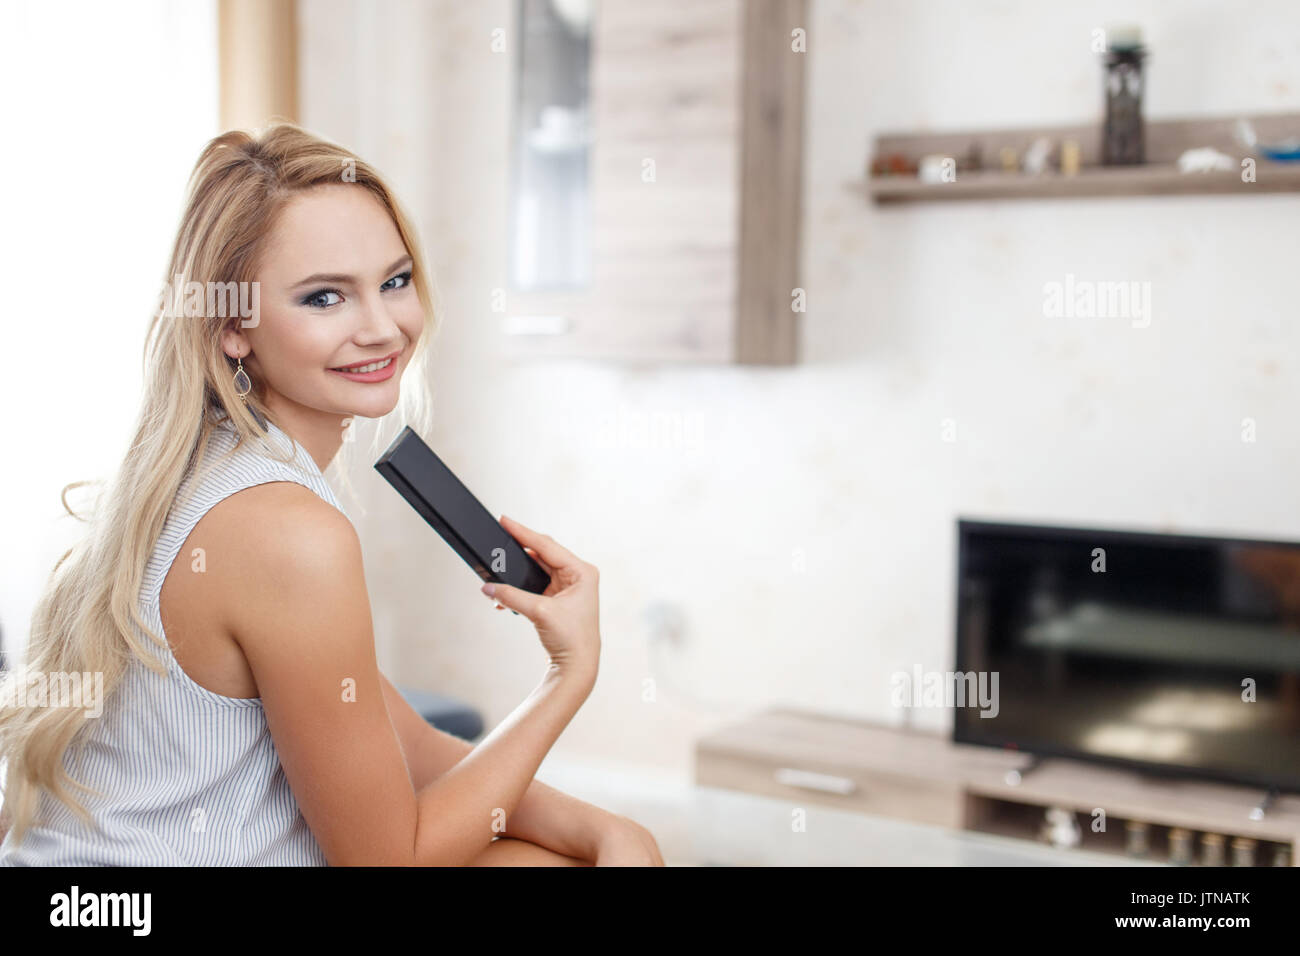 Gerne blonde junge Frau mit TV-Fernbedienung im Wohnzimmer Stockfoto